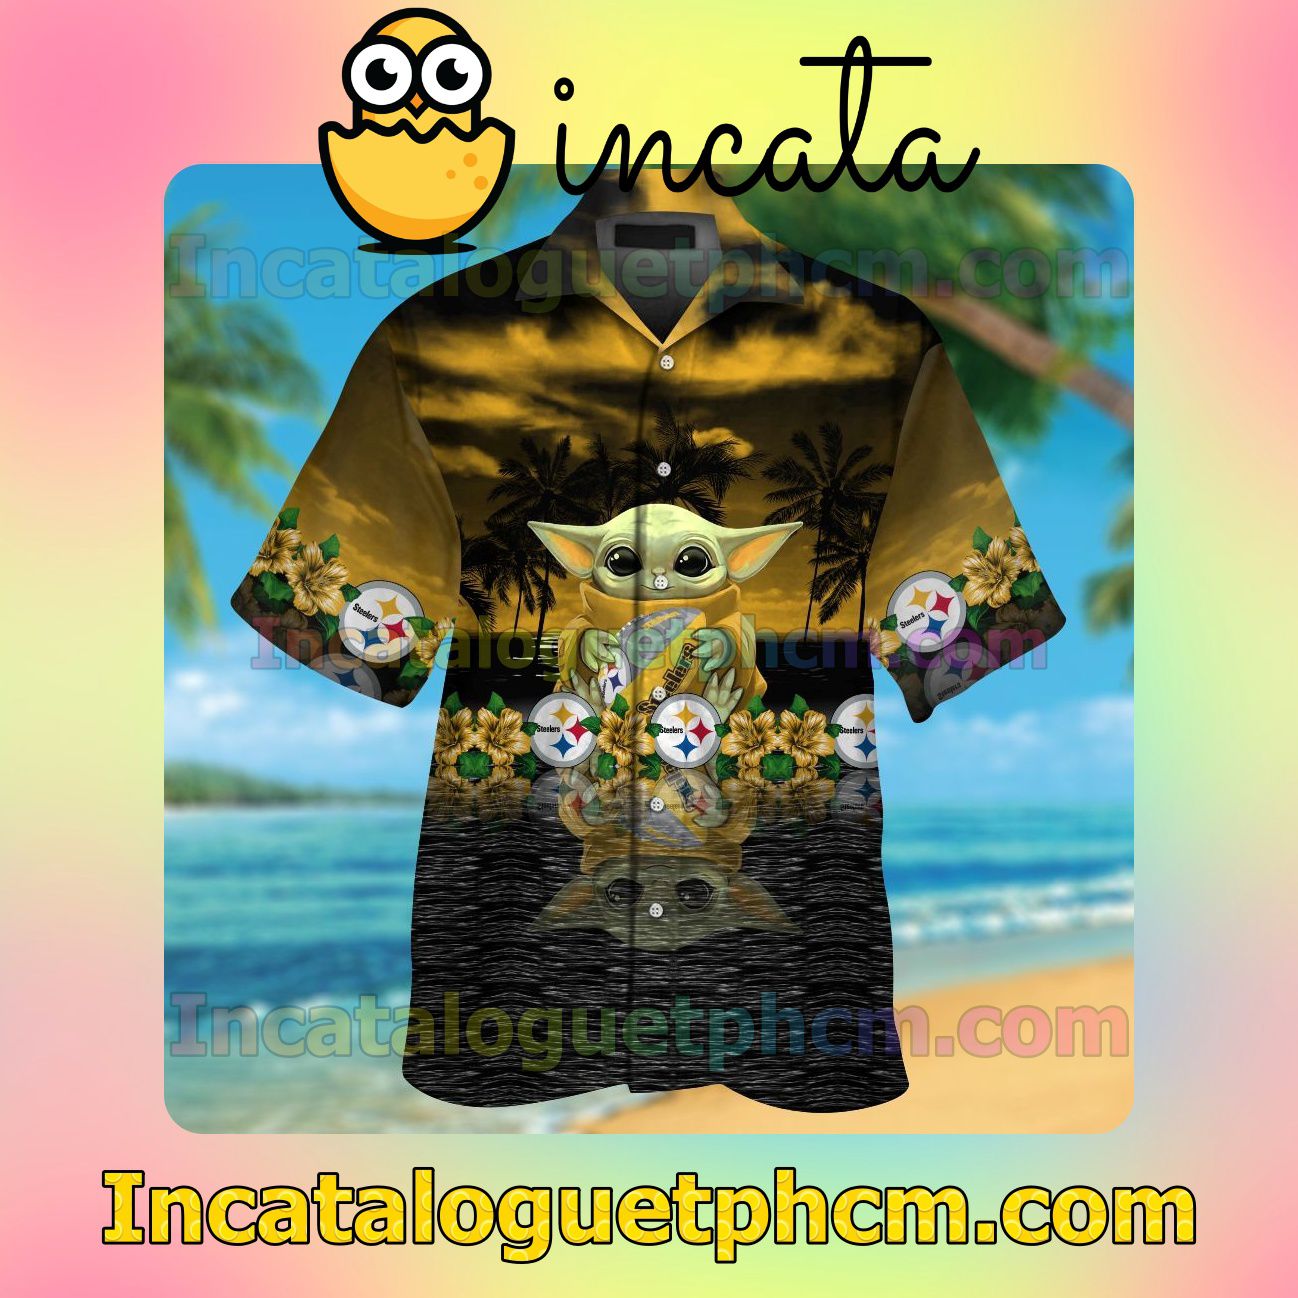 Pittsburgh Steelers & Baby Yoda Beach Vacation Shirt, Swim Shorts